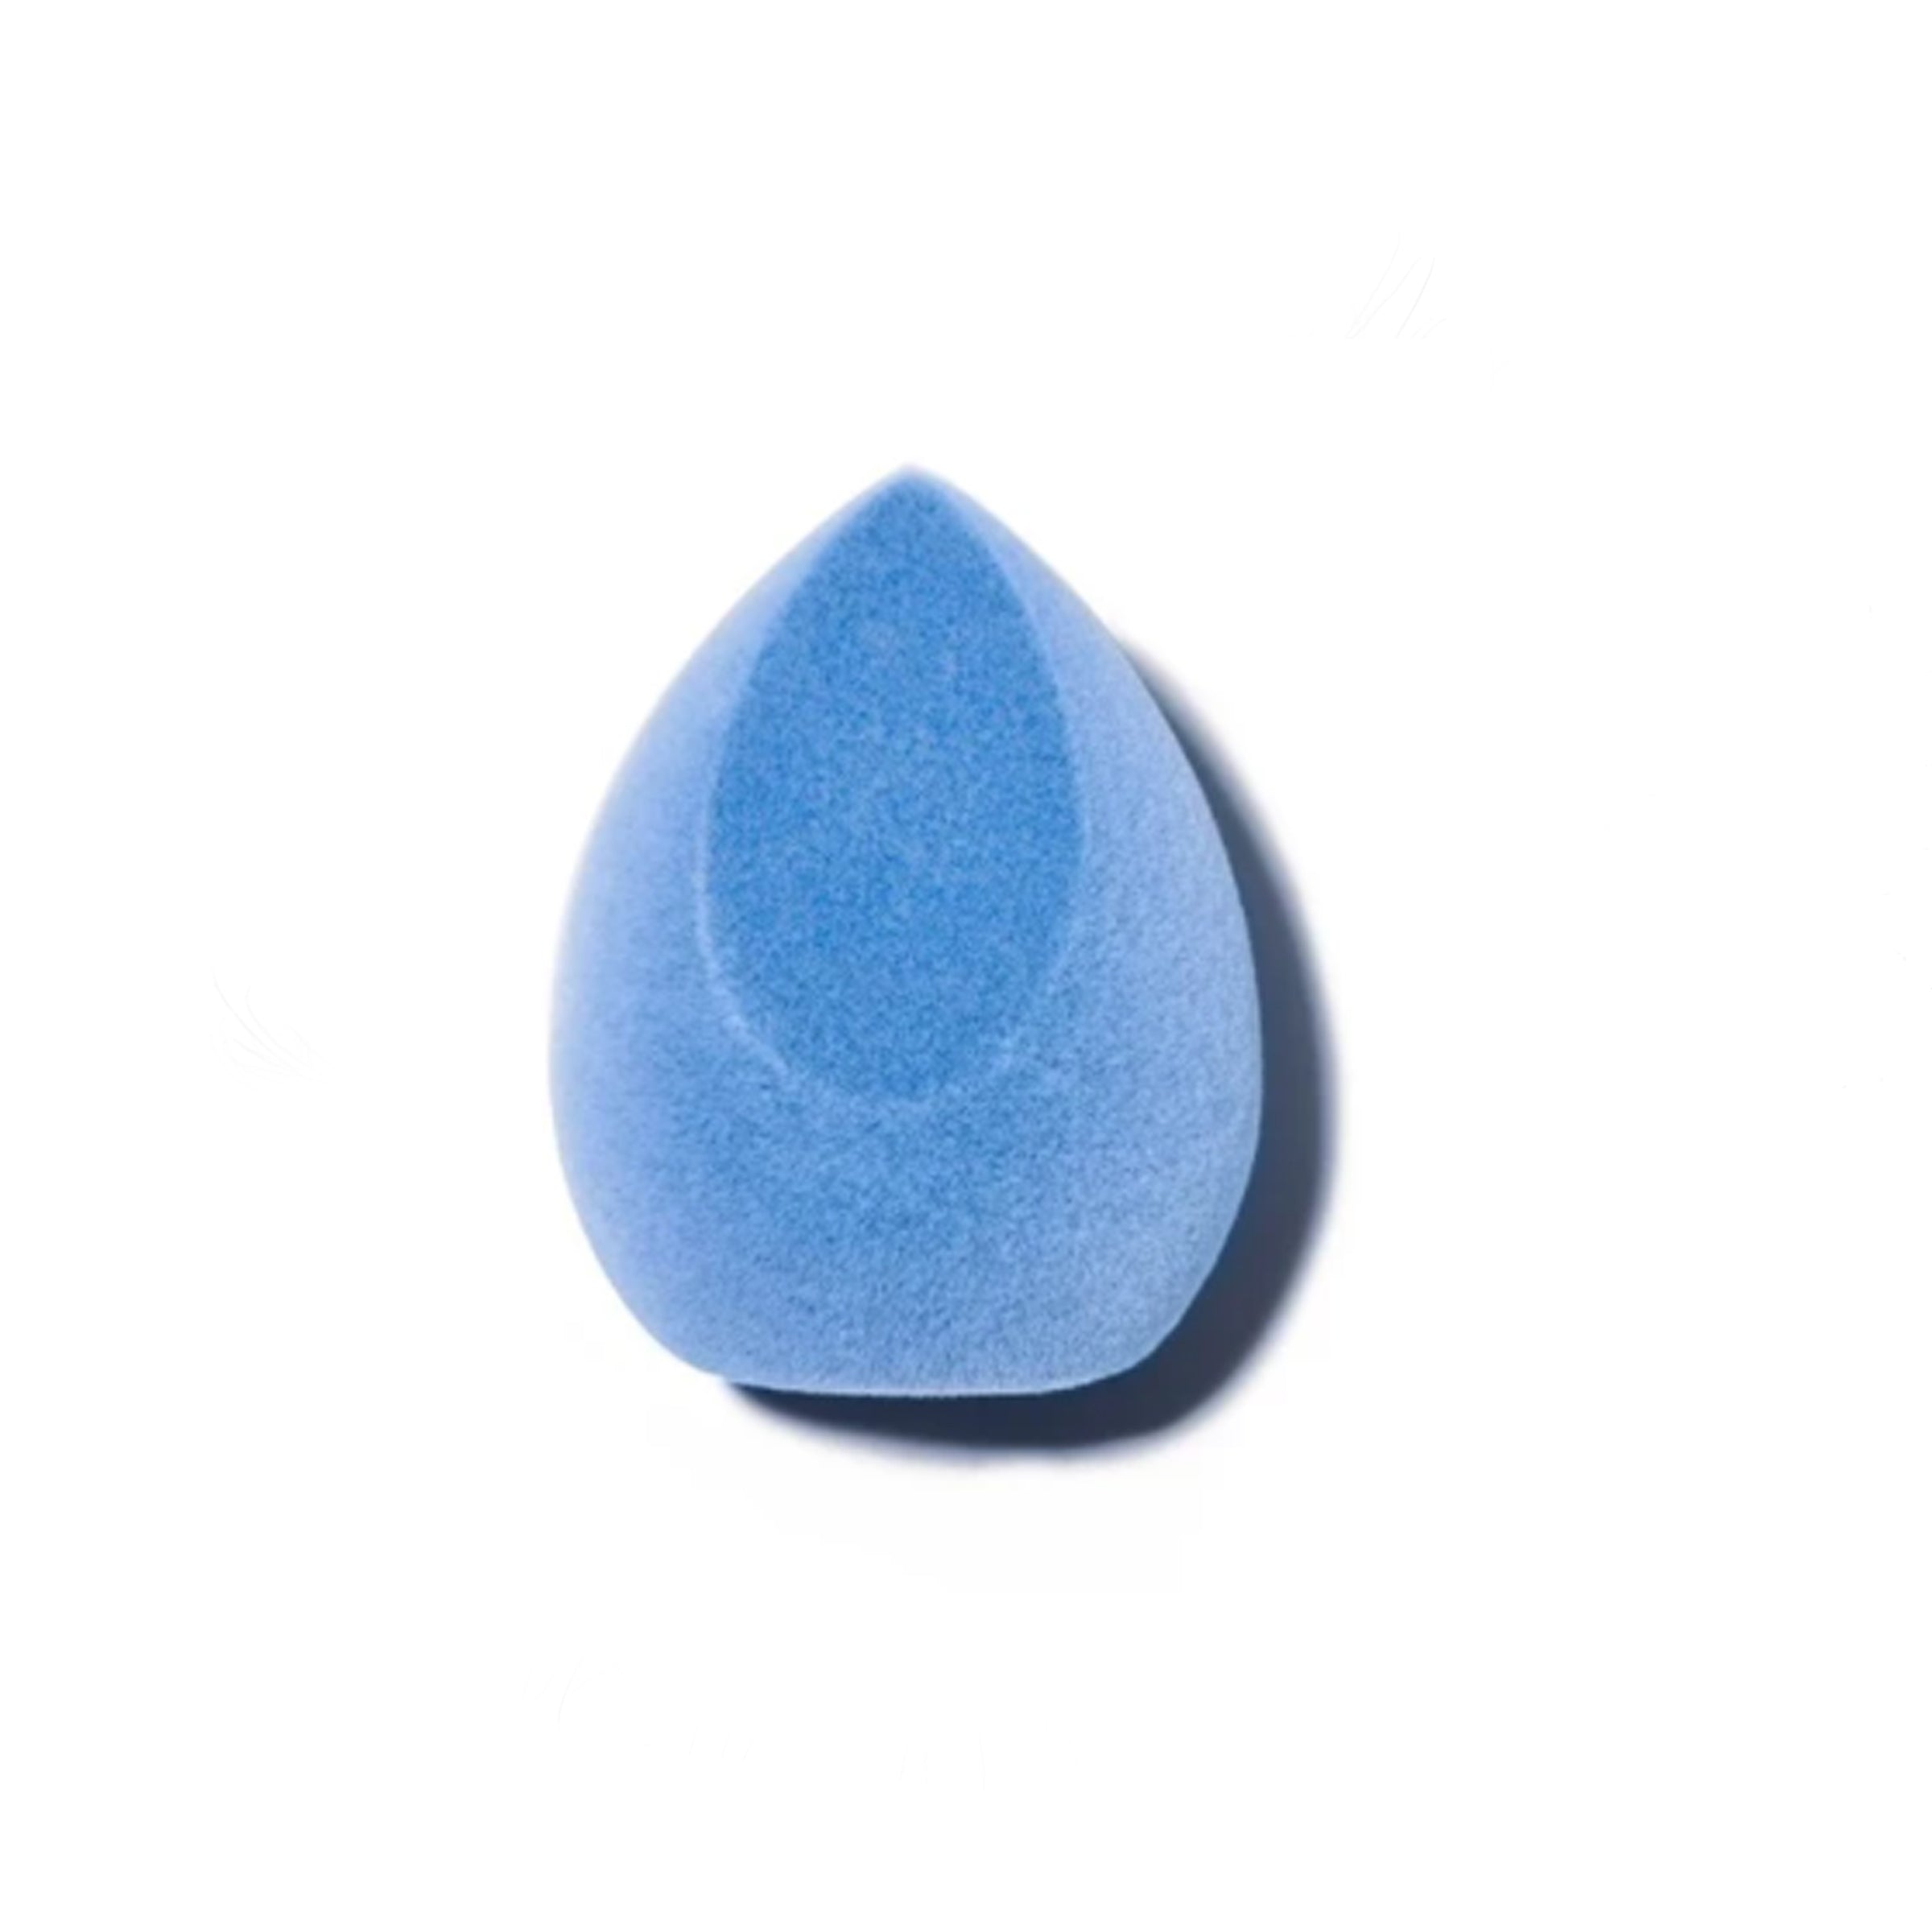 Blue Microfiber Beauty Blender